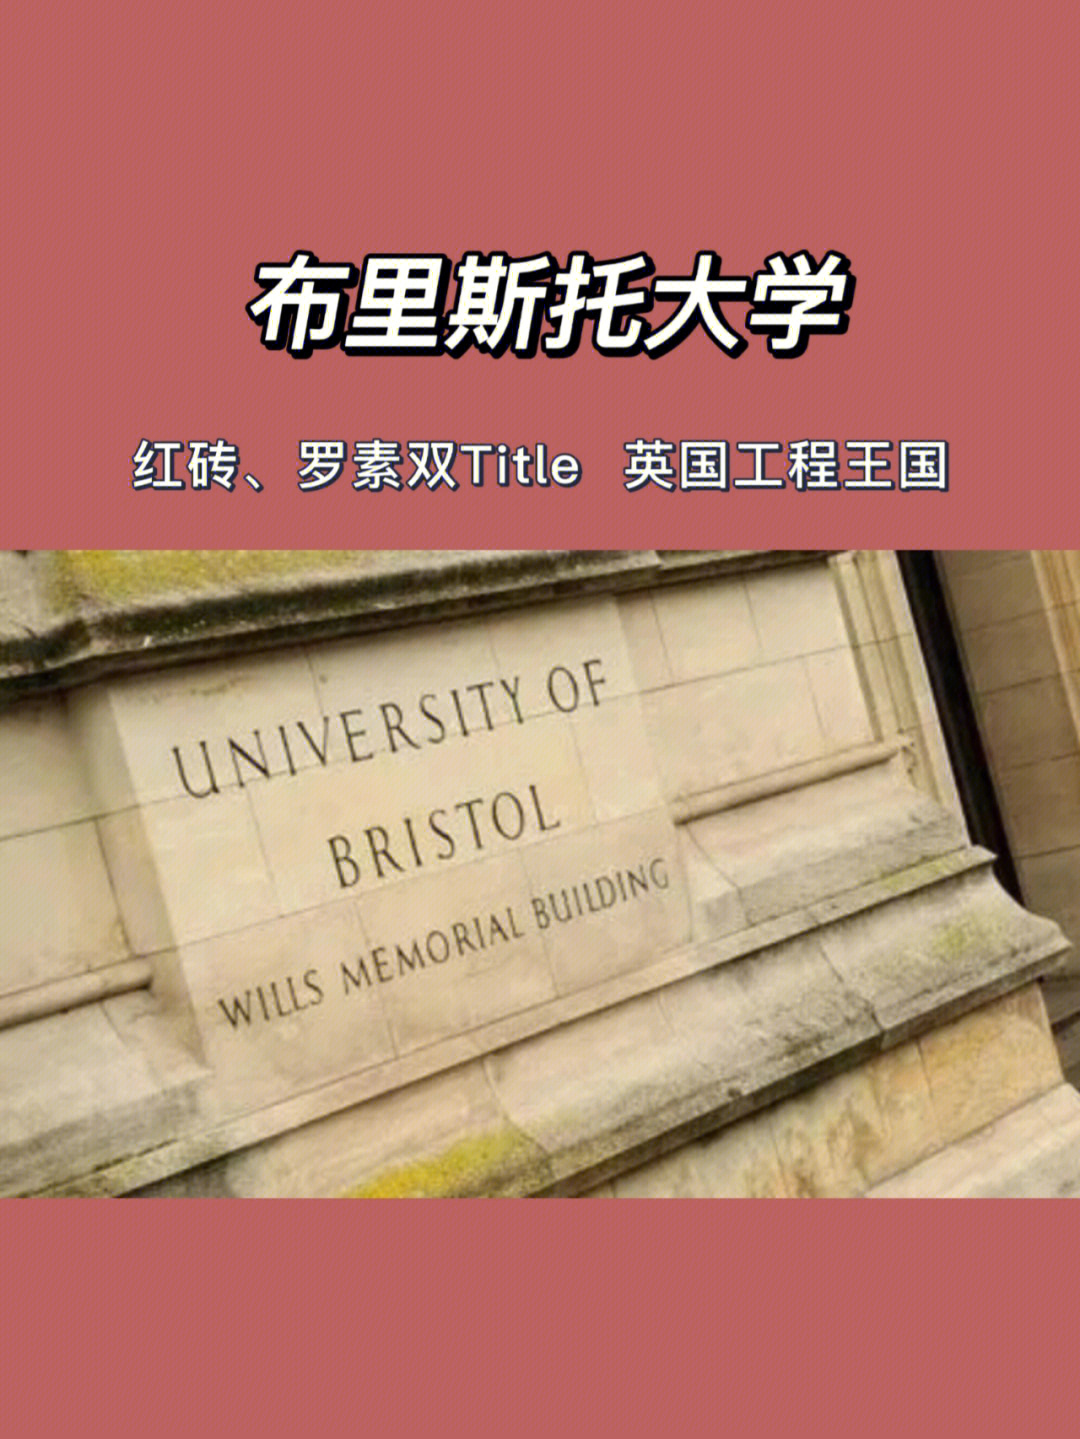 大学,始建于1876年,坐落于英格兰西南部小城布里斯托,拥有51位英国